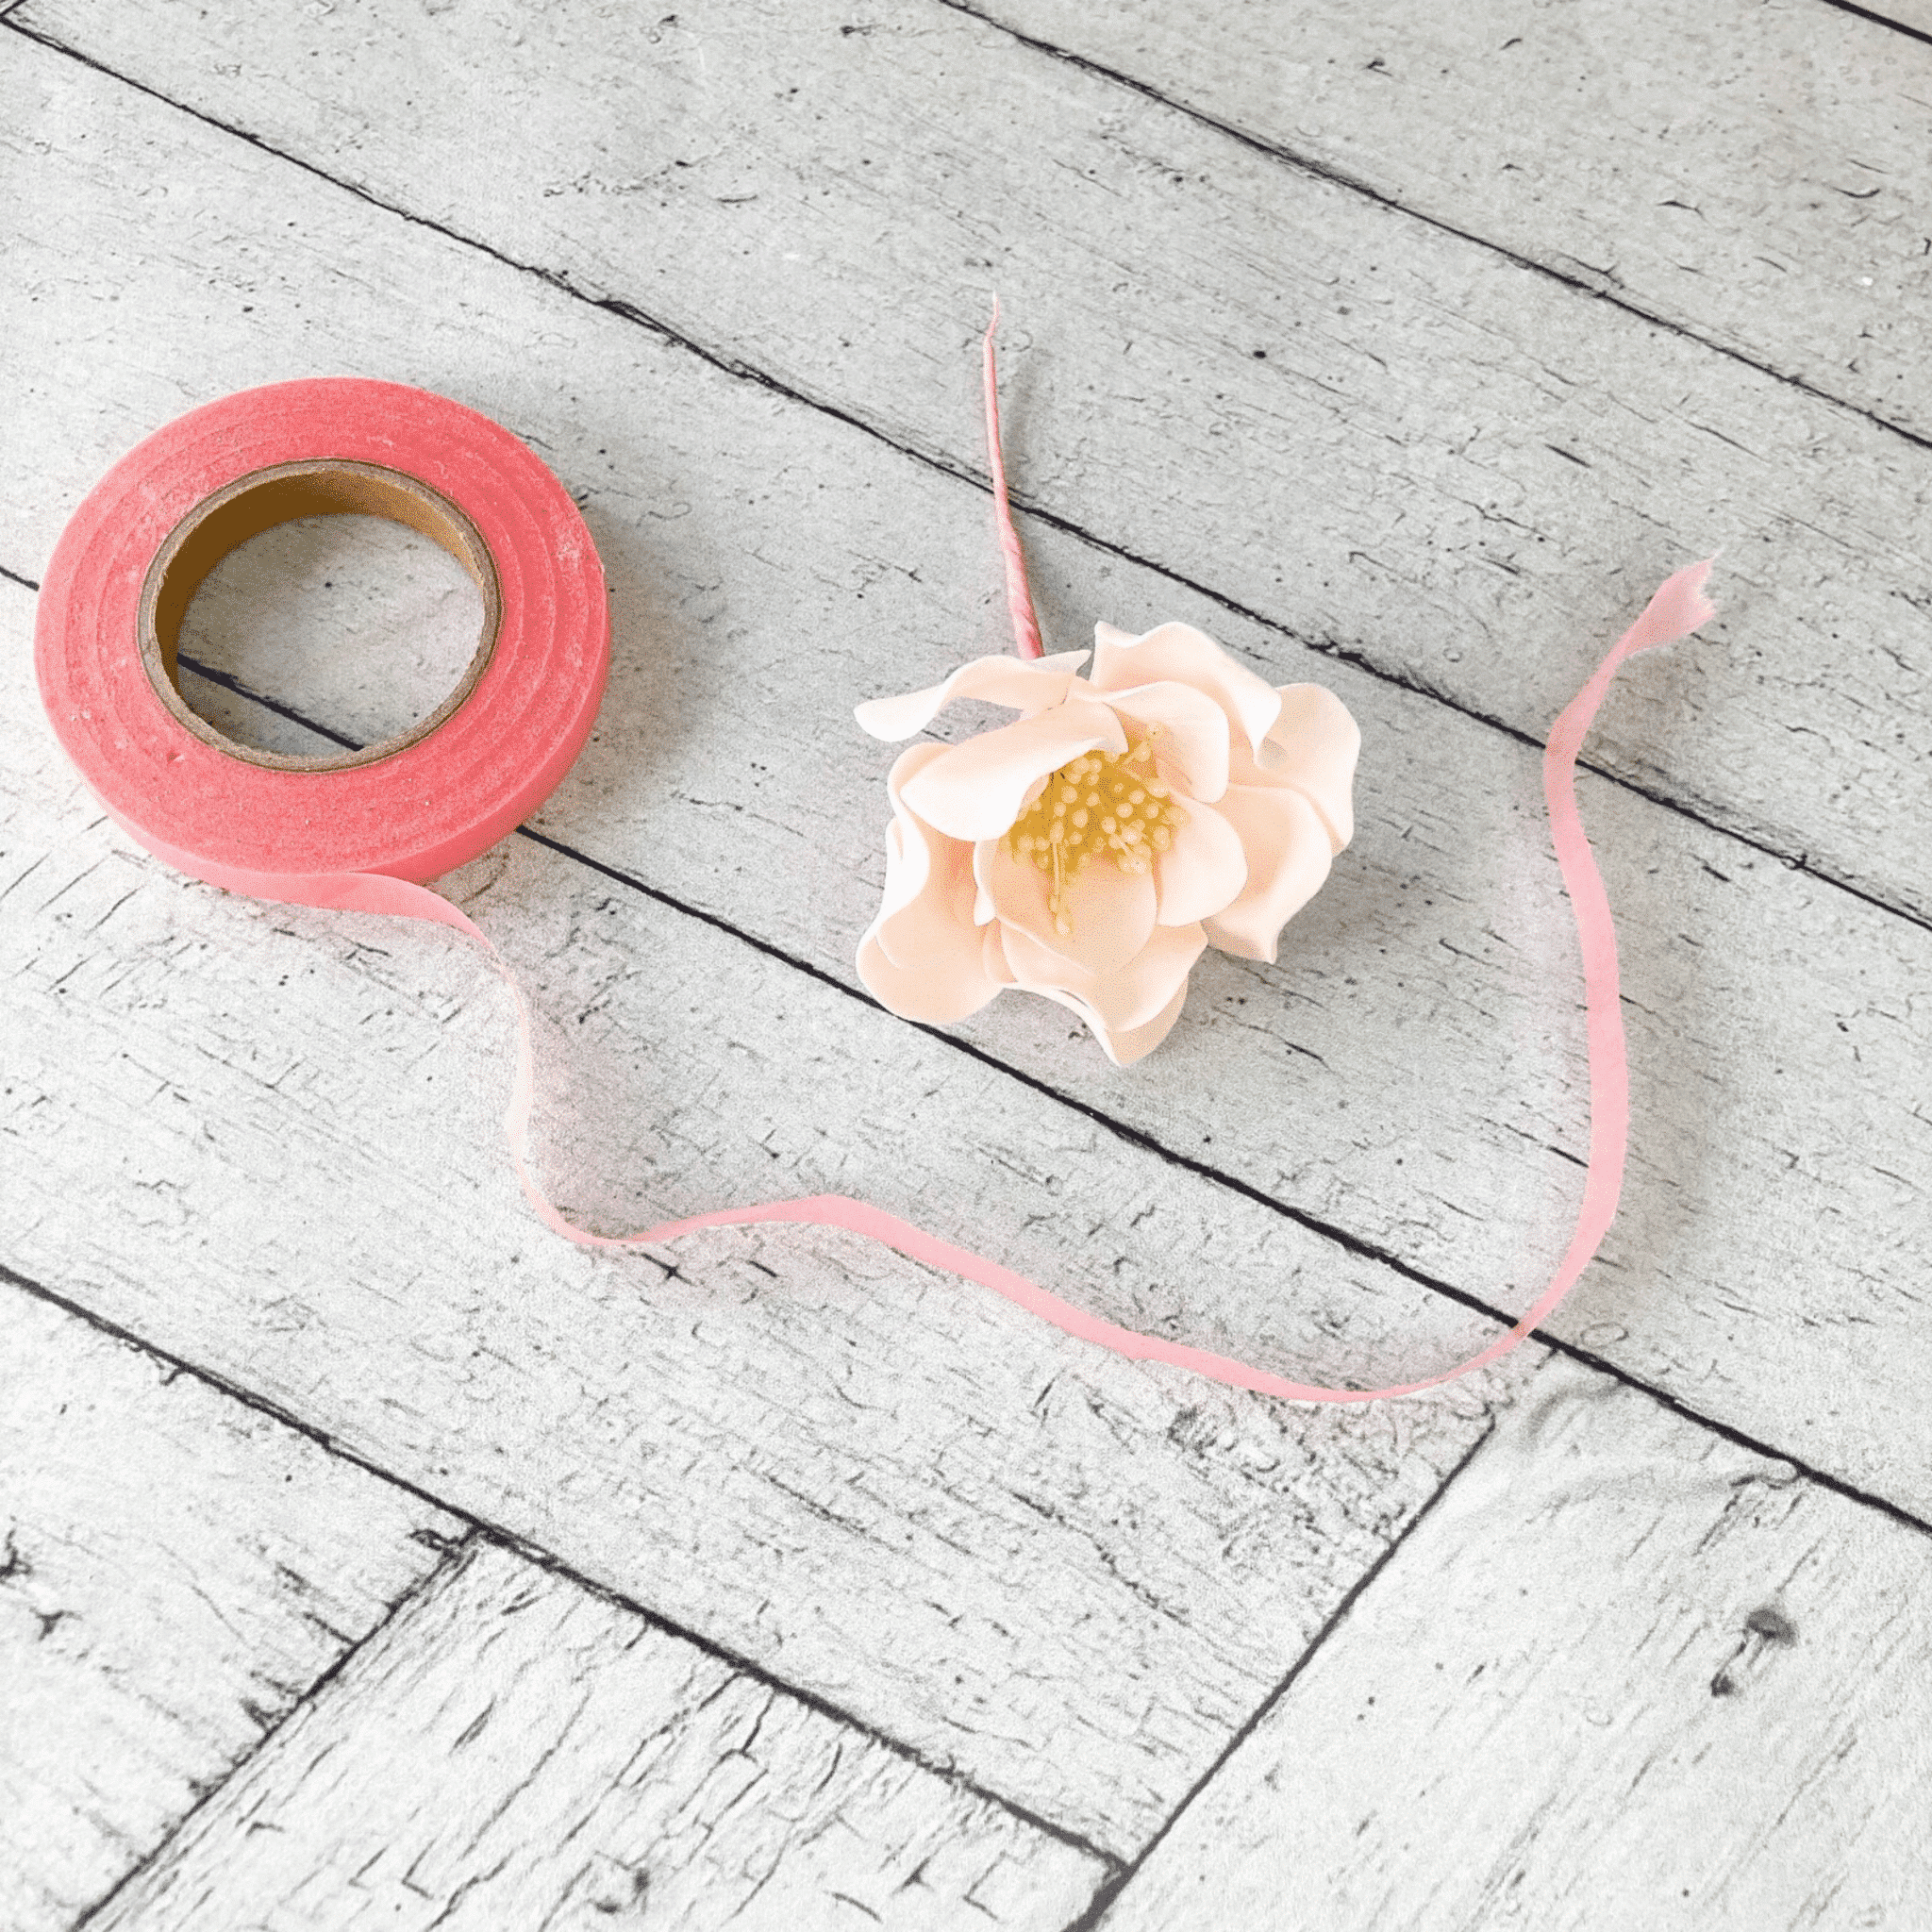 Pink Floral Tape | Sugar Flowers by Kelsie Cakes